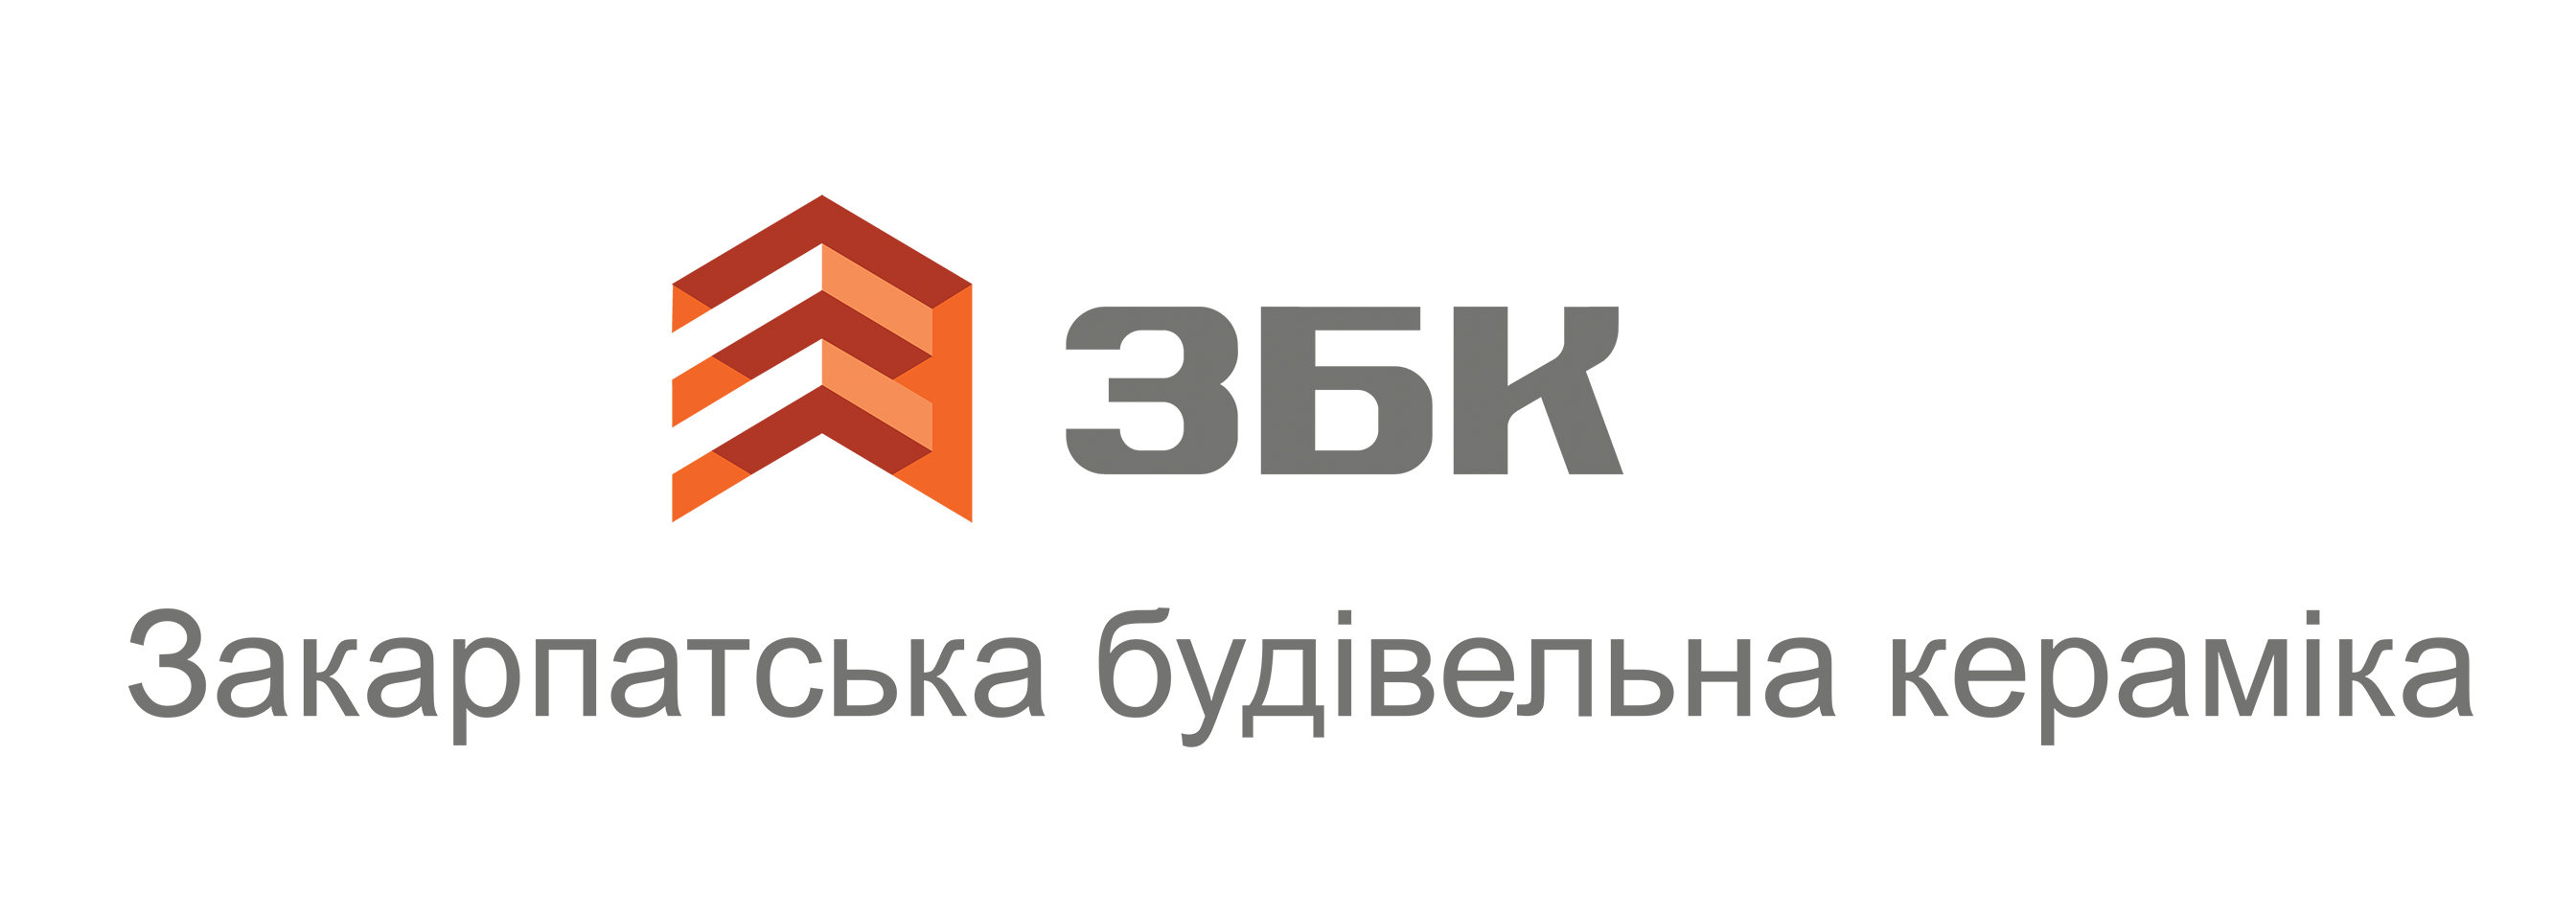 Партнери logo zbk 6